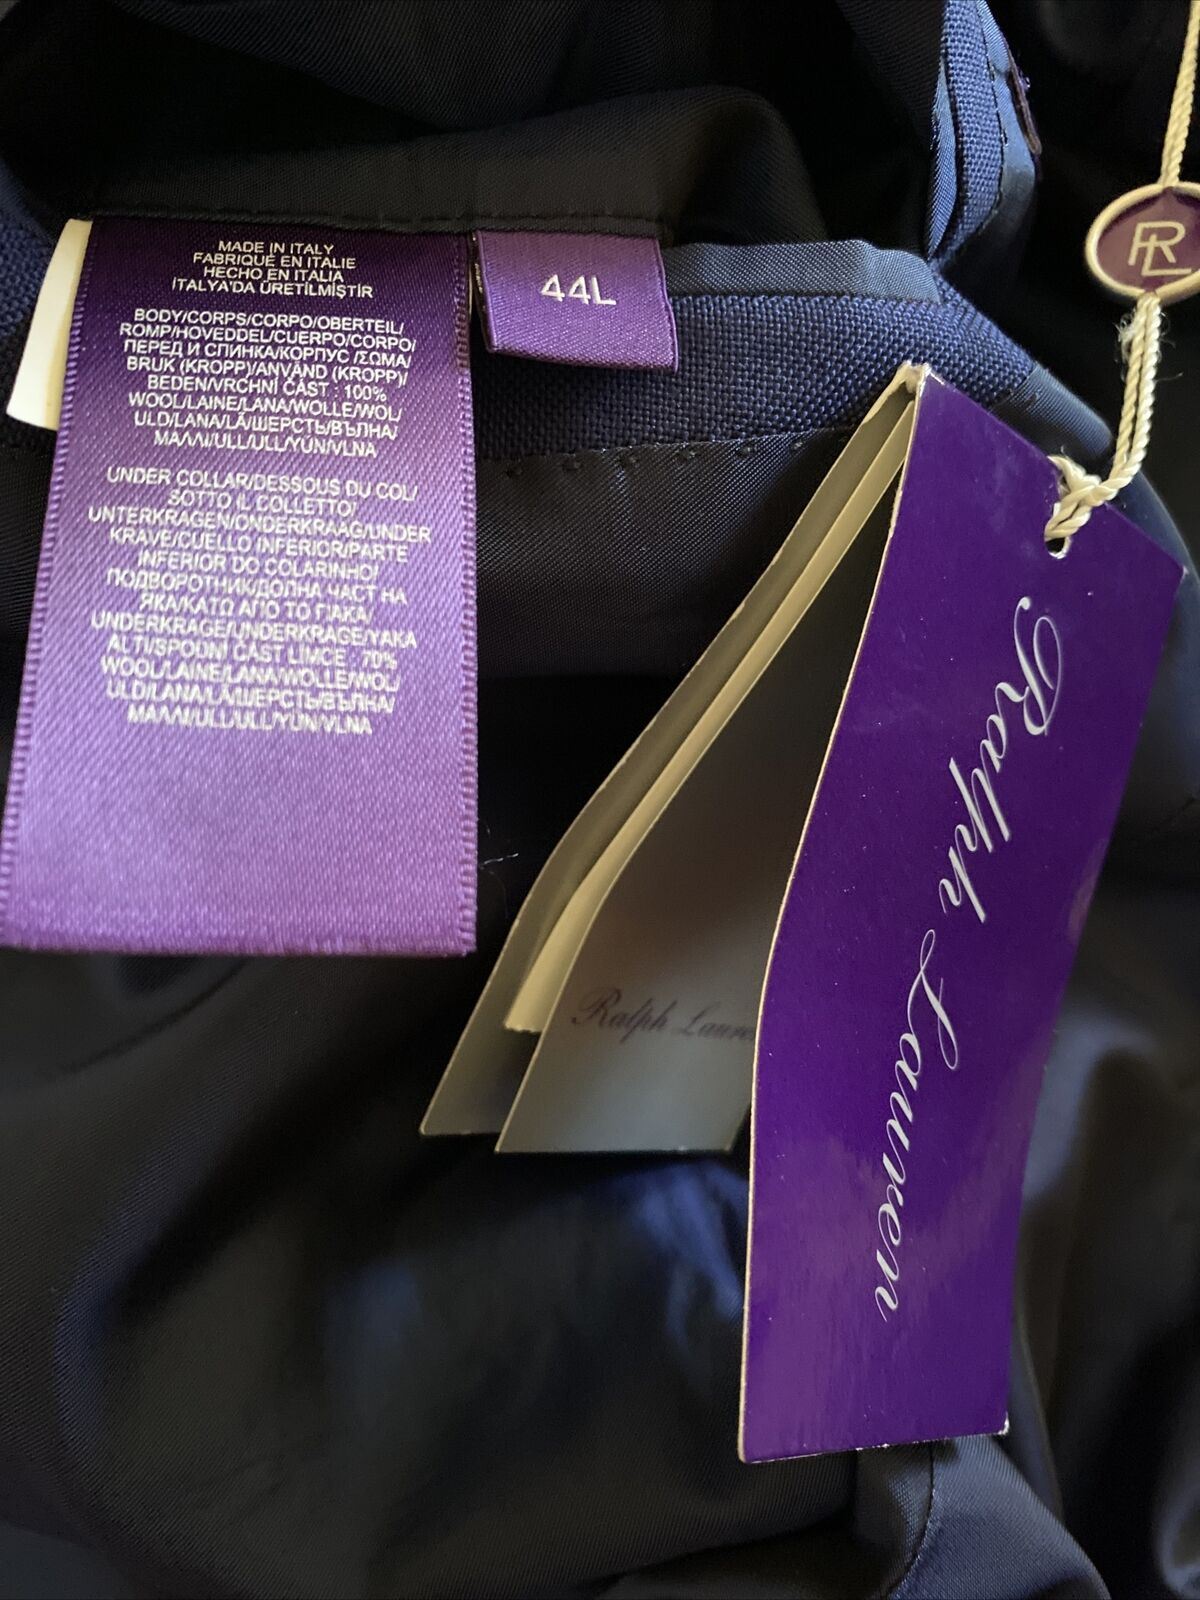 Neu $3295 Ralph Lauren Purple Label Herrenanzug Blau 44L US/54L Eu Italien